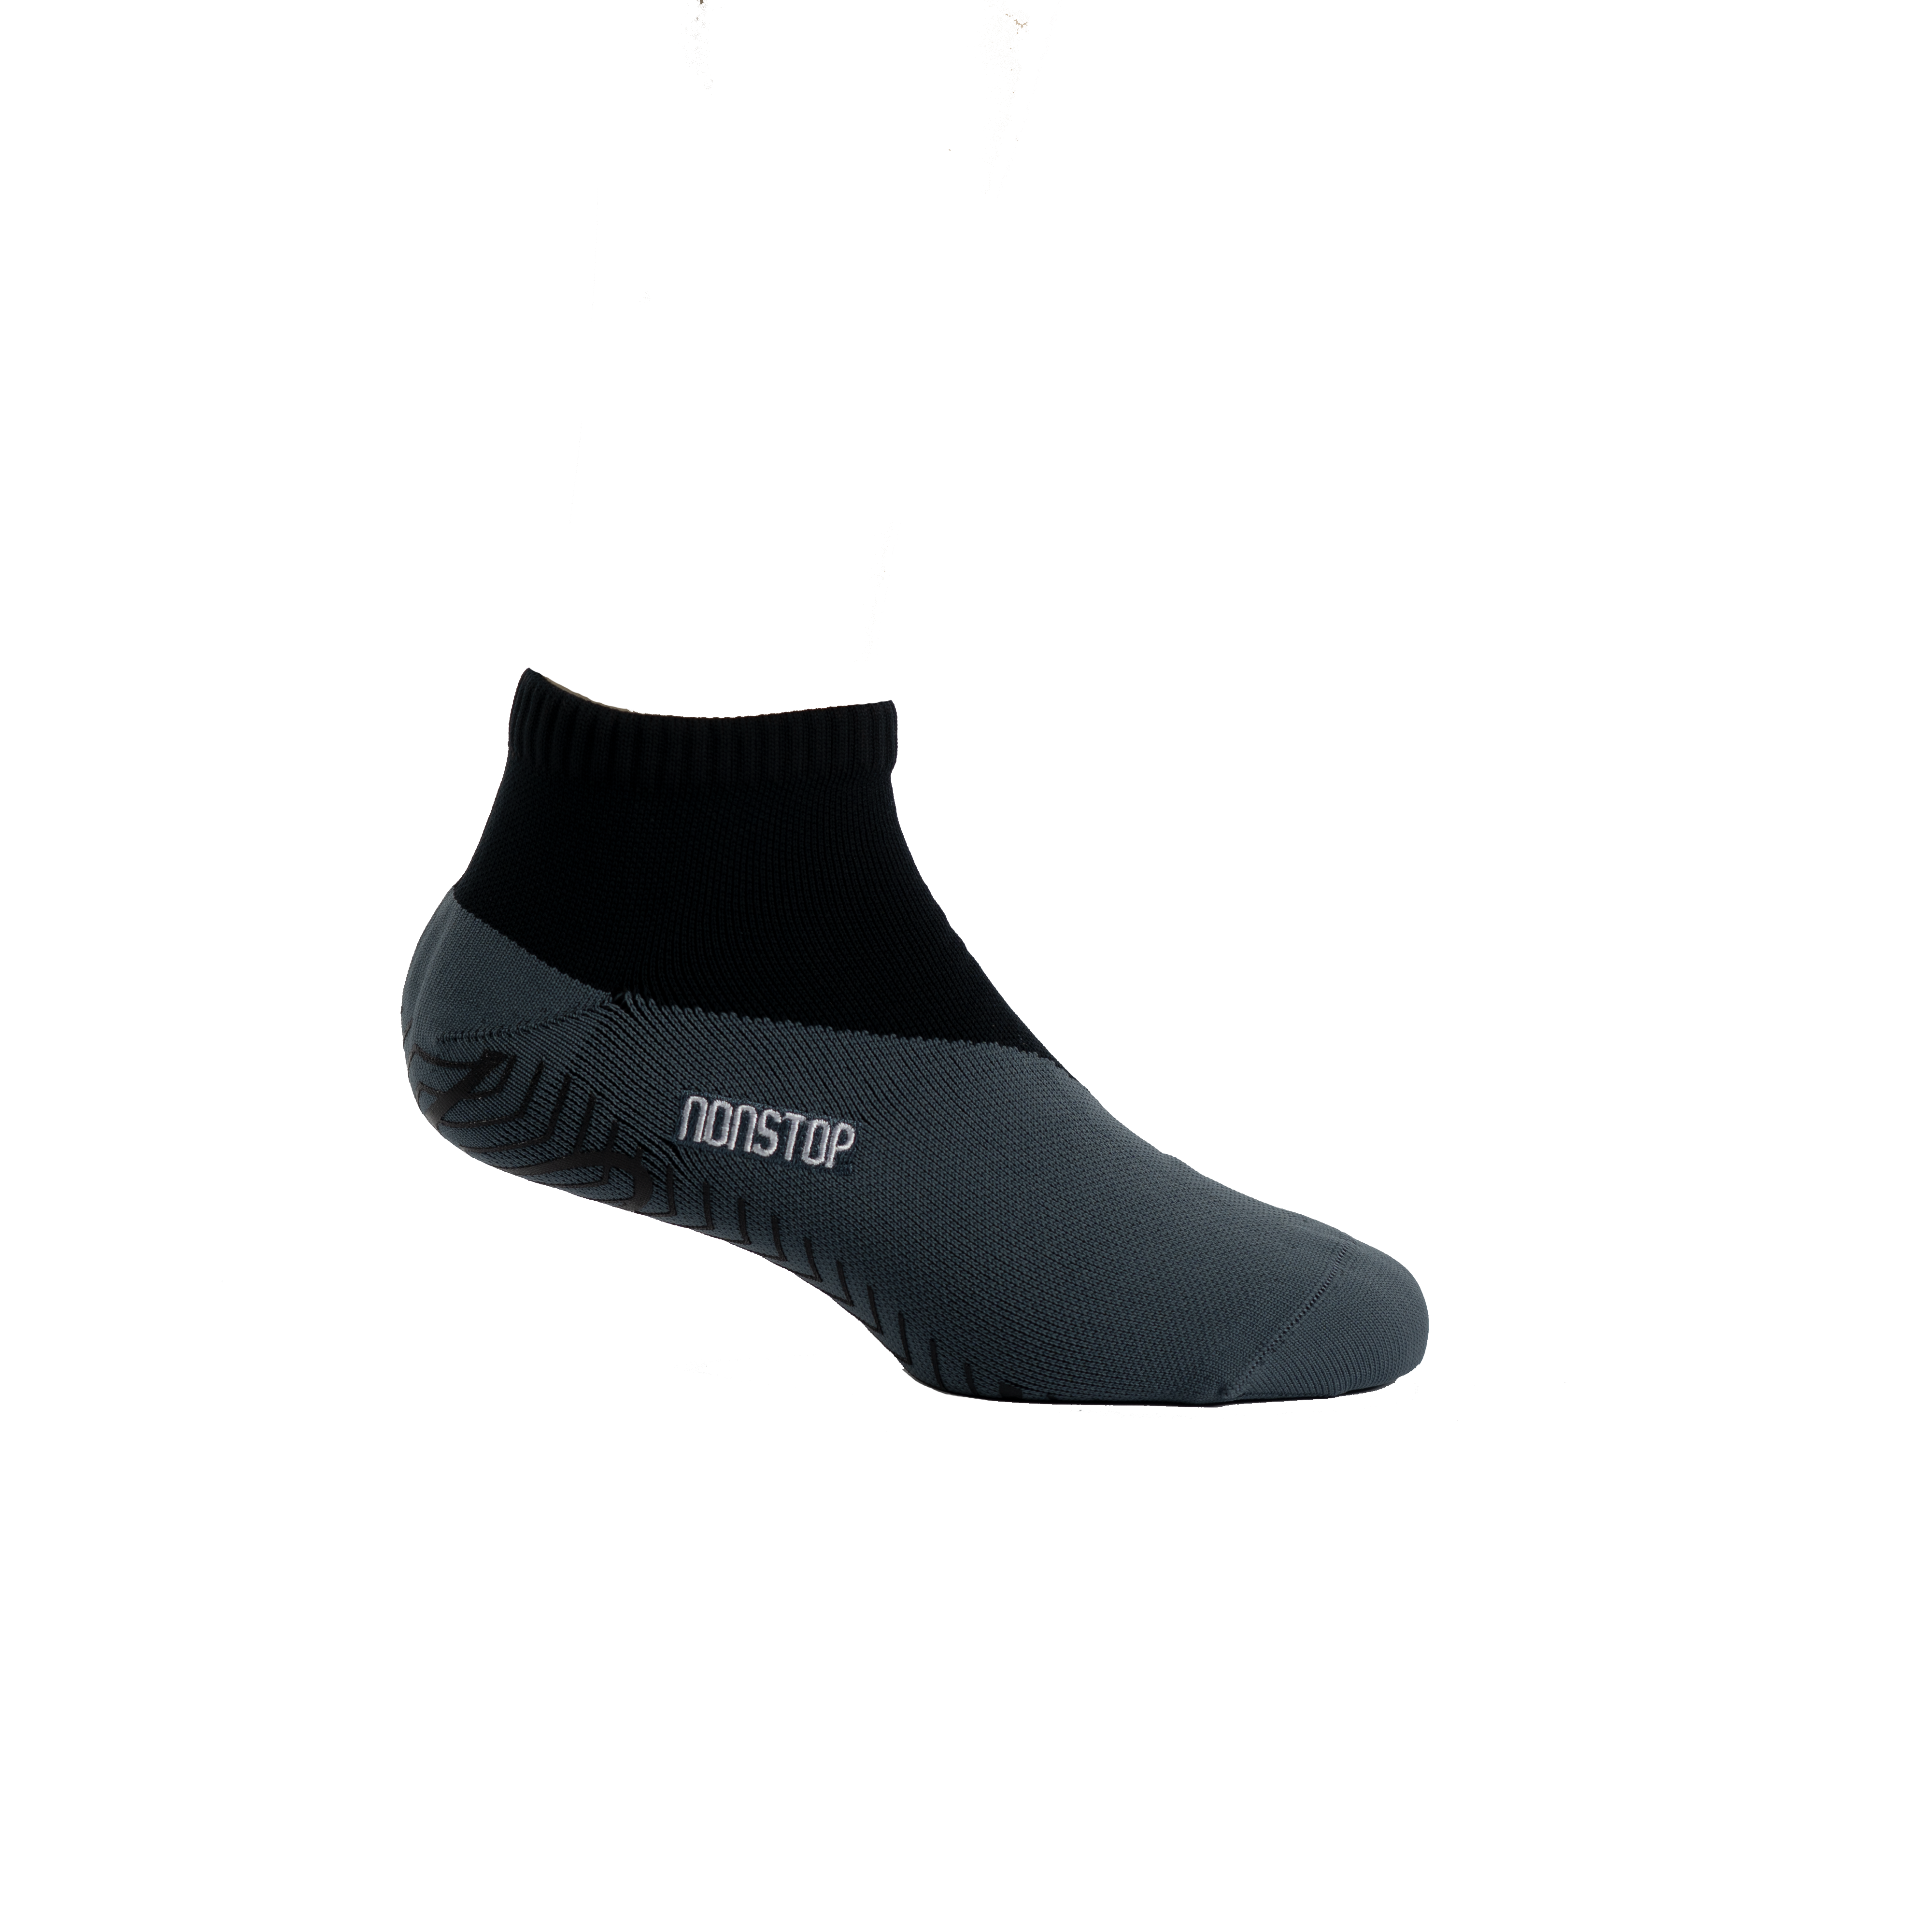 NONSTOP 2.0 - Waterproof Socks